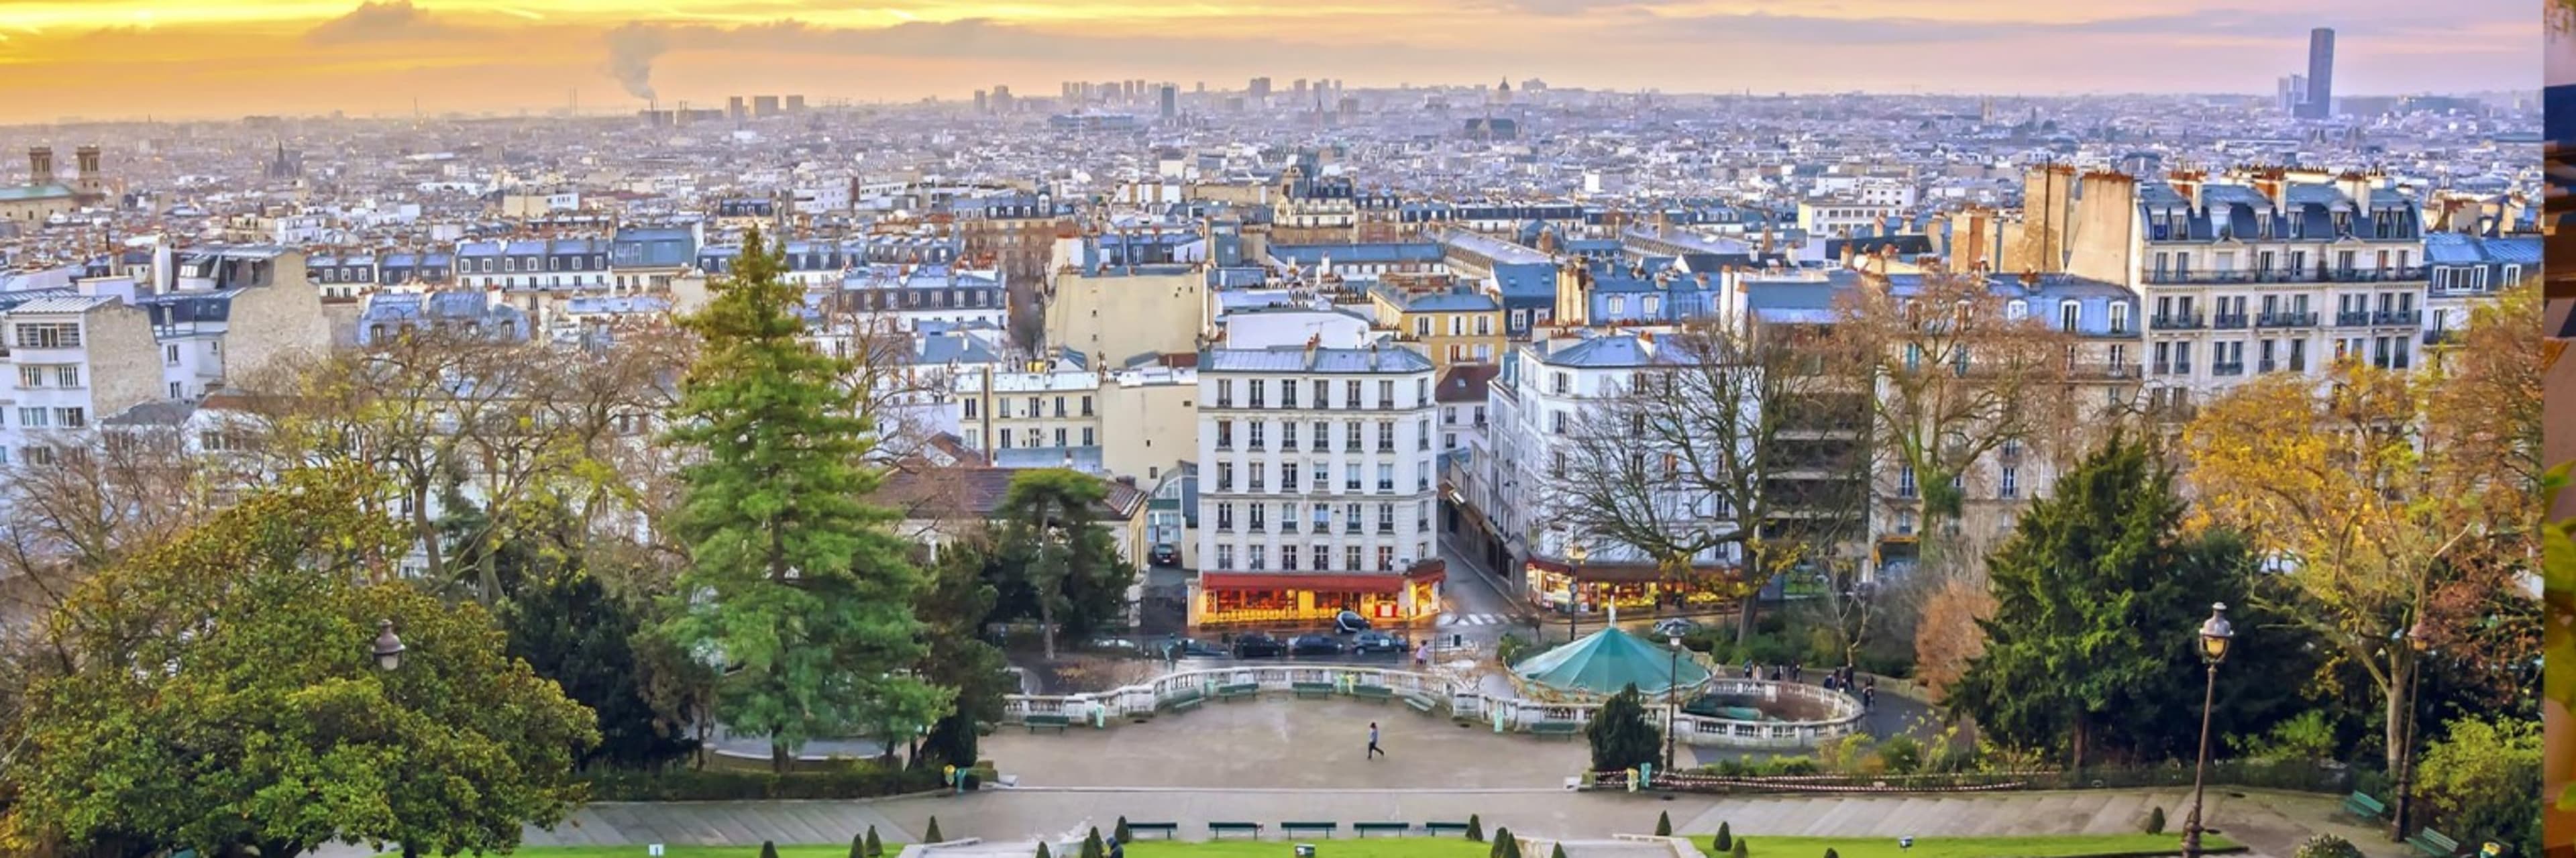 Montmartre & Sacré Coeur